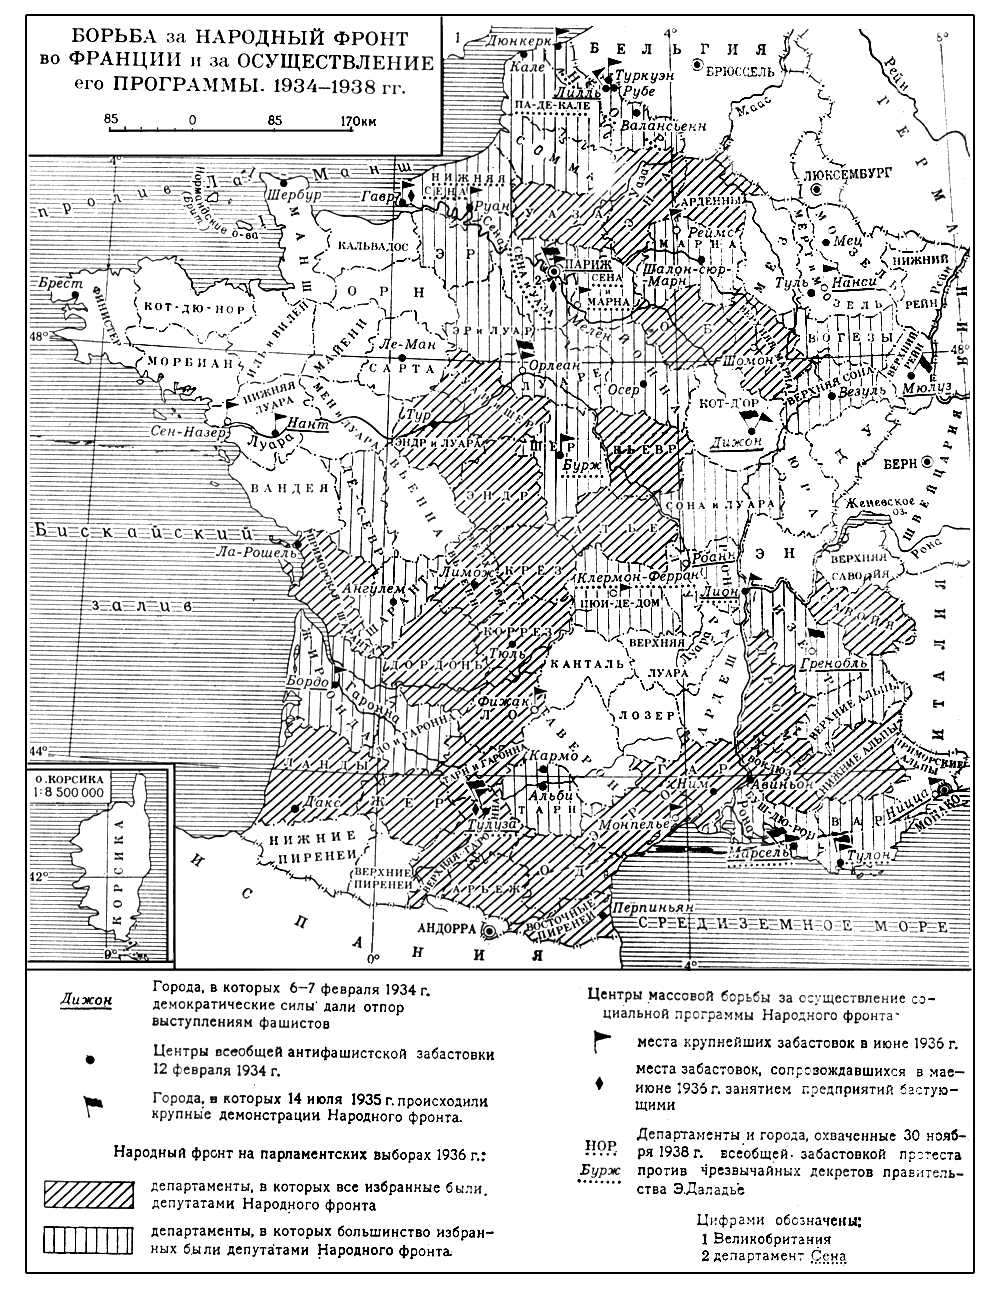 Борьба за Народный Фронт во Франции (карта)